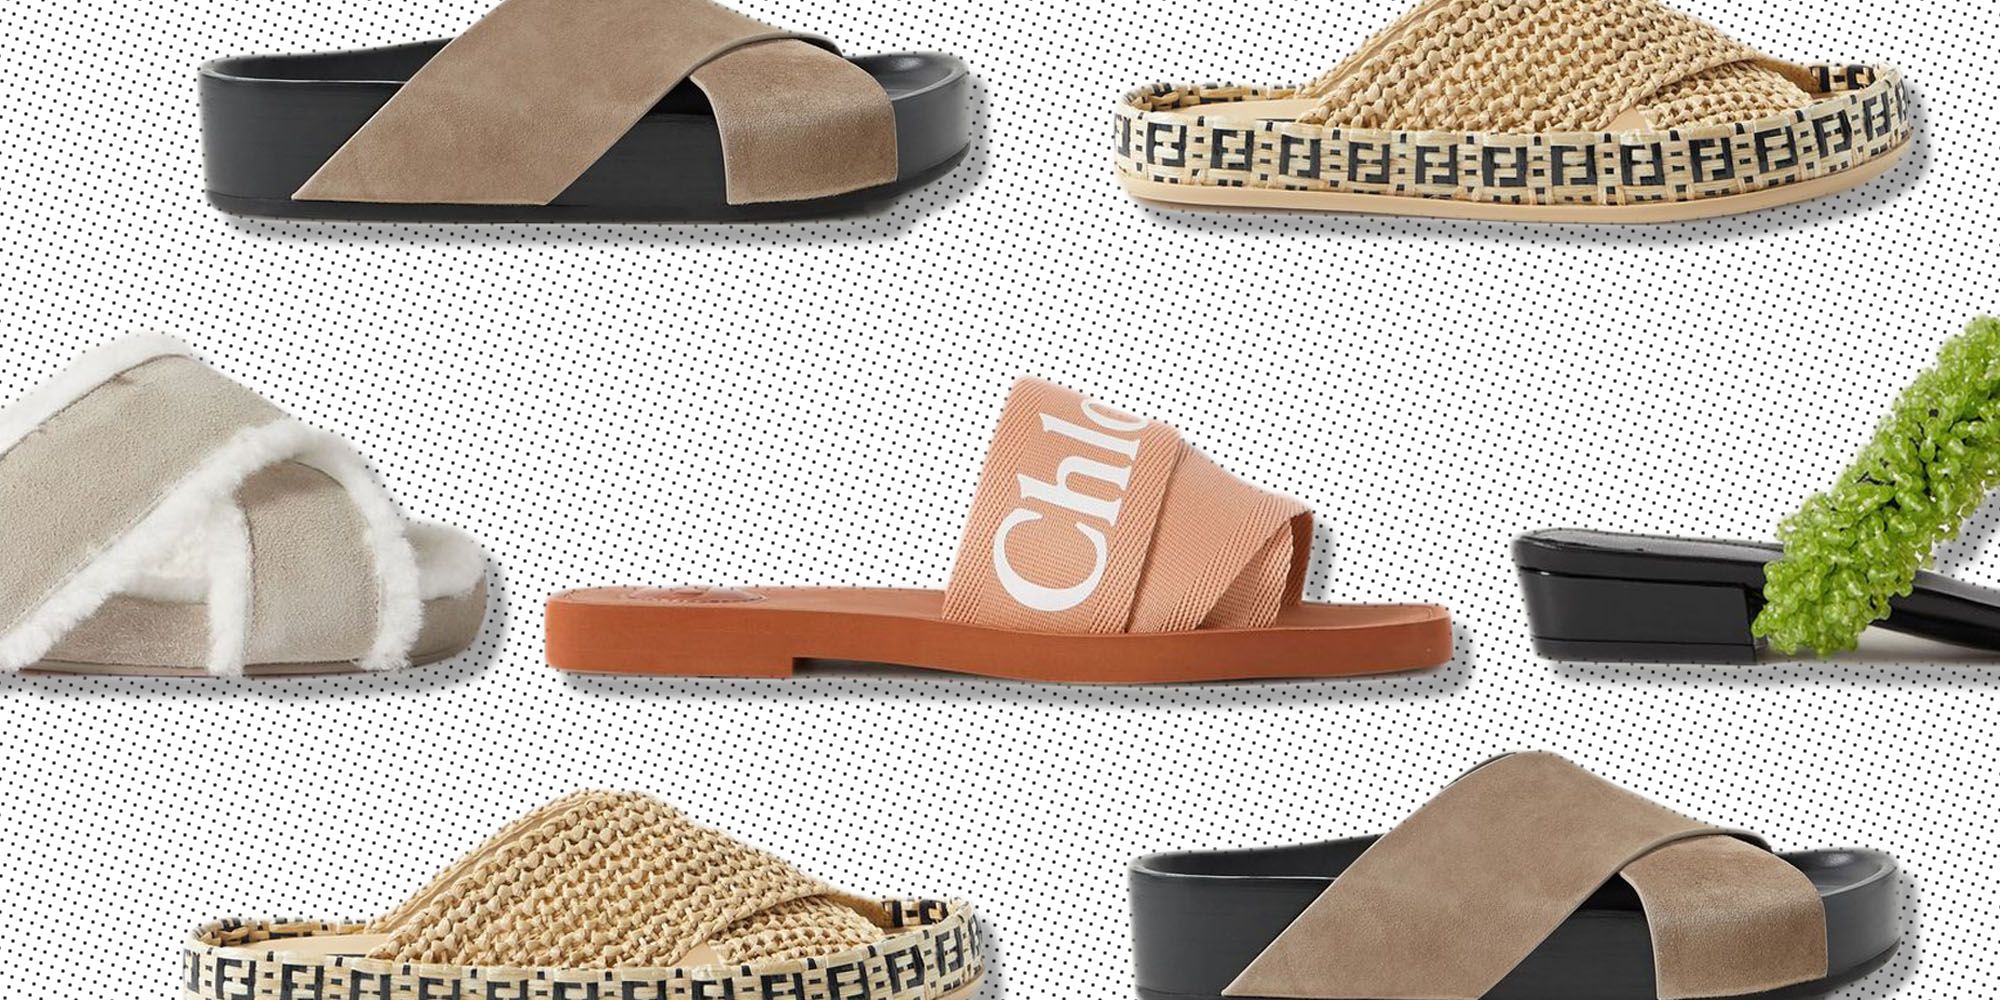 Kinematik Algebraisk Anvendelse 51 Best Sandals To Buy This Summer - Summer Sandals